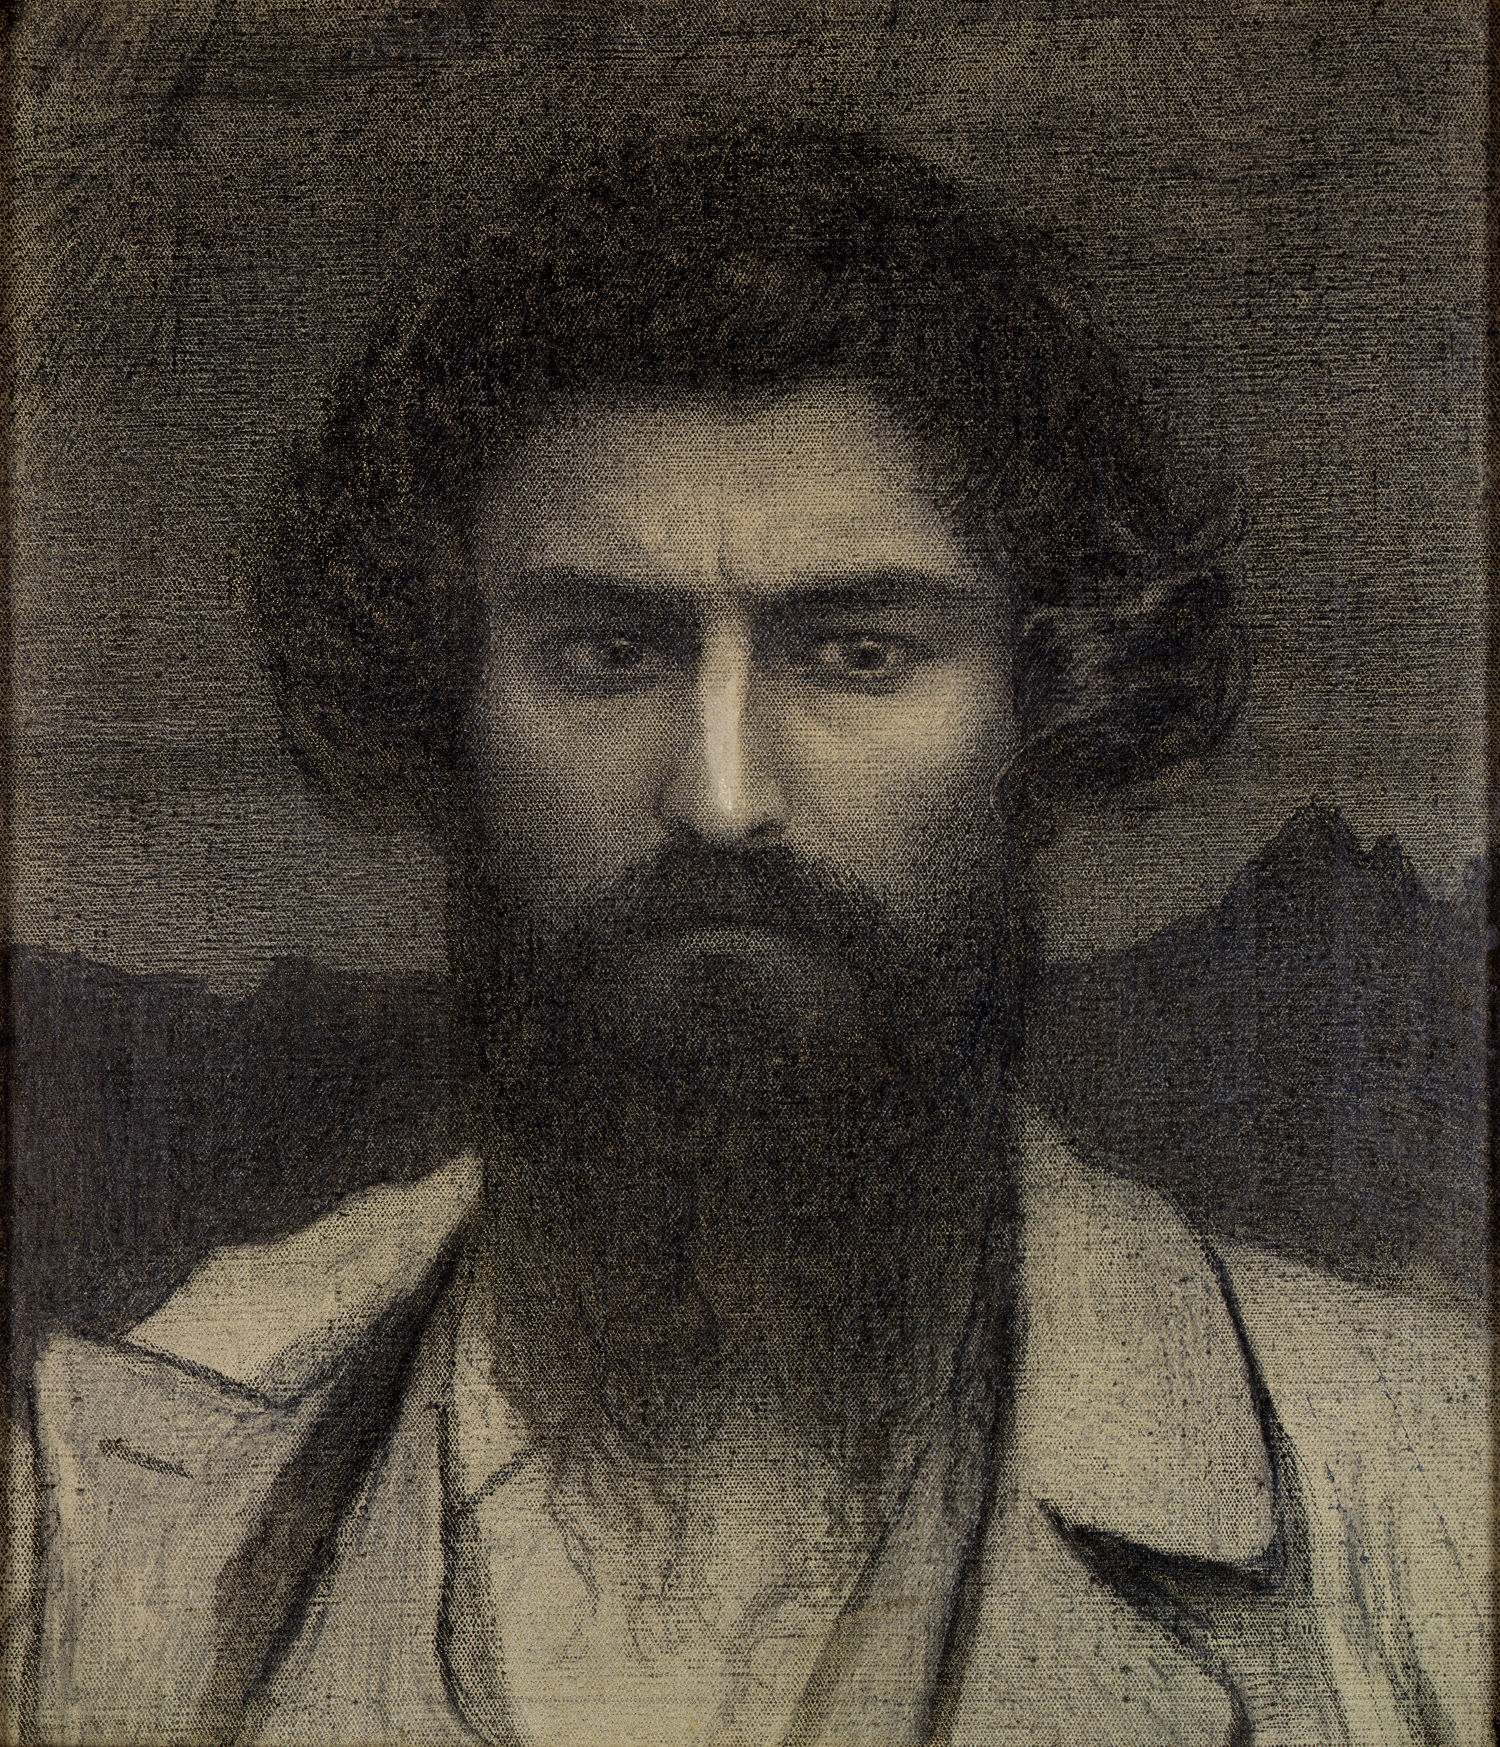 Giovanni Segantini - 15 gennaio 1858 - 28 settembre 1899